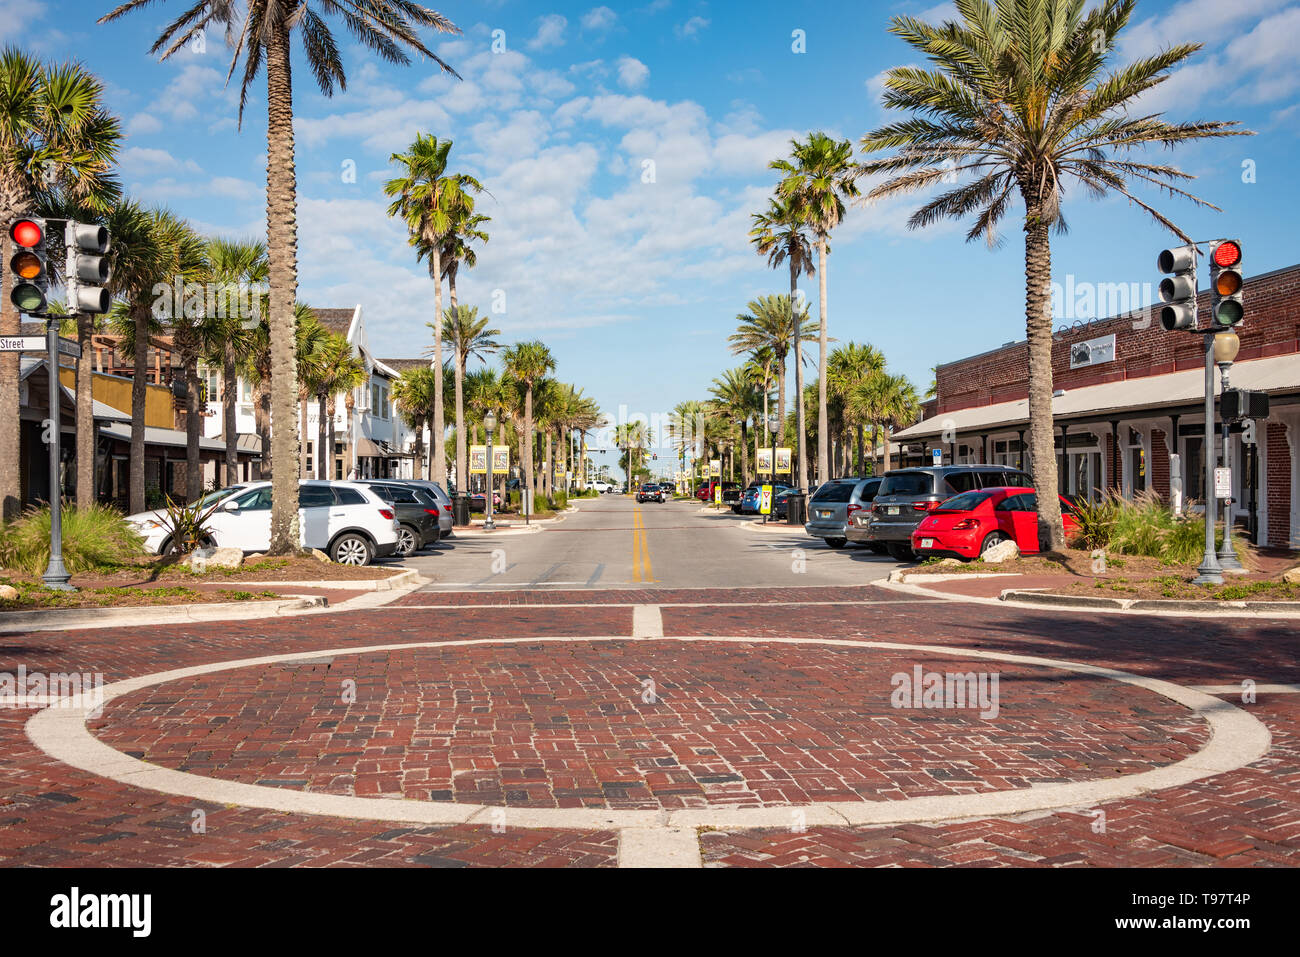 Restaurants locaux ville de plage bordent la rue entre la Floride A1A et Ocean Boulevard à la ligne de démarcation entre plage de l'Atlantique et de Neptune Beach, FL. Banque D'Images